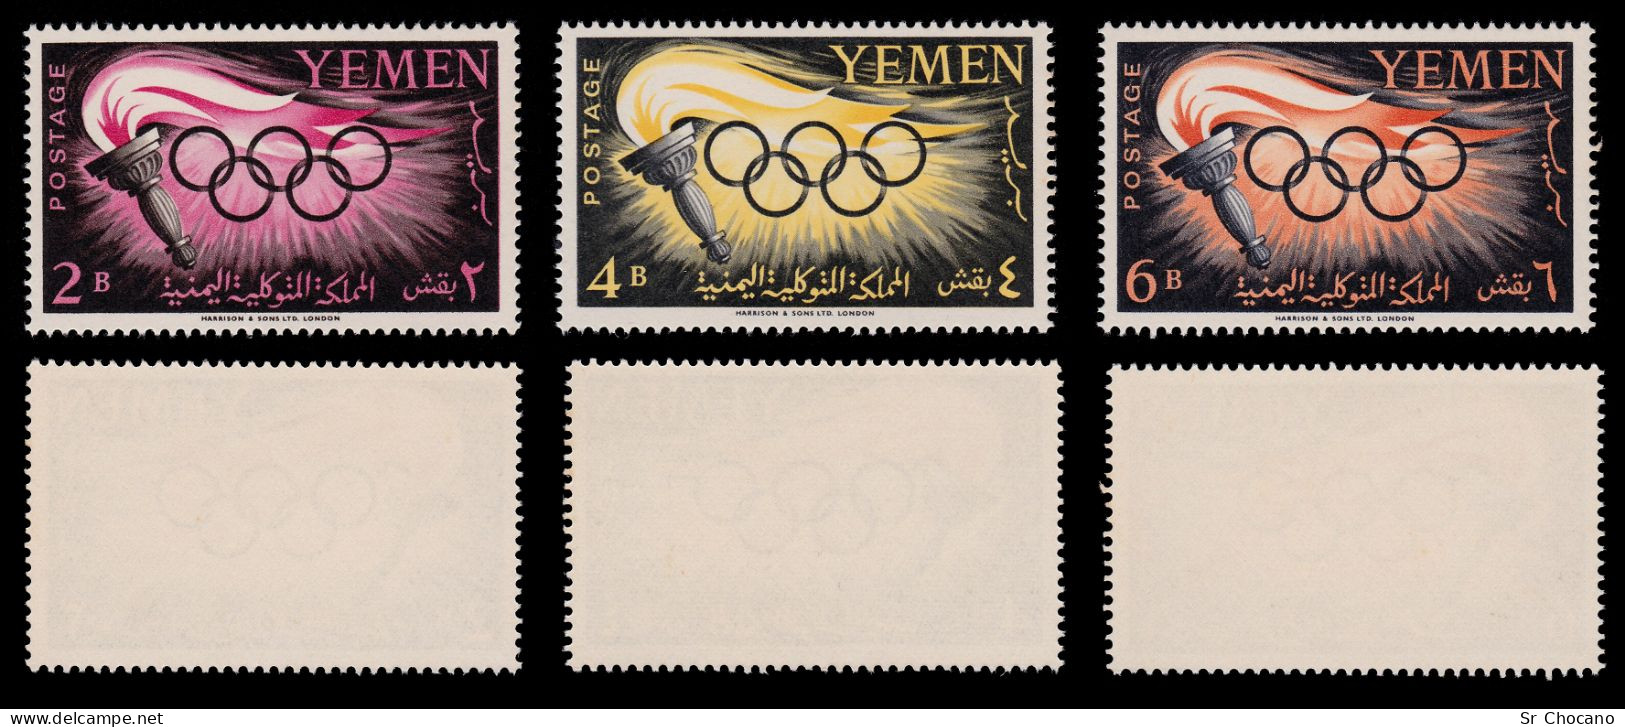 YEMEN STAMPS.1960.17th Olympic Games.Rome.SCOTT 98-102.MNH. - Yemen